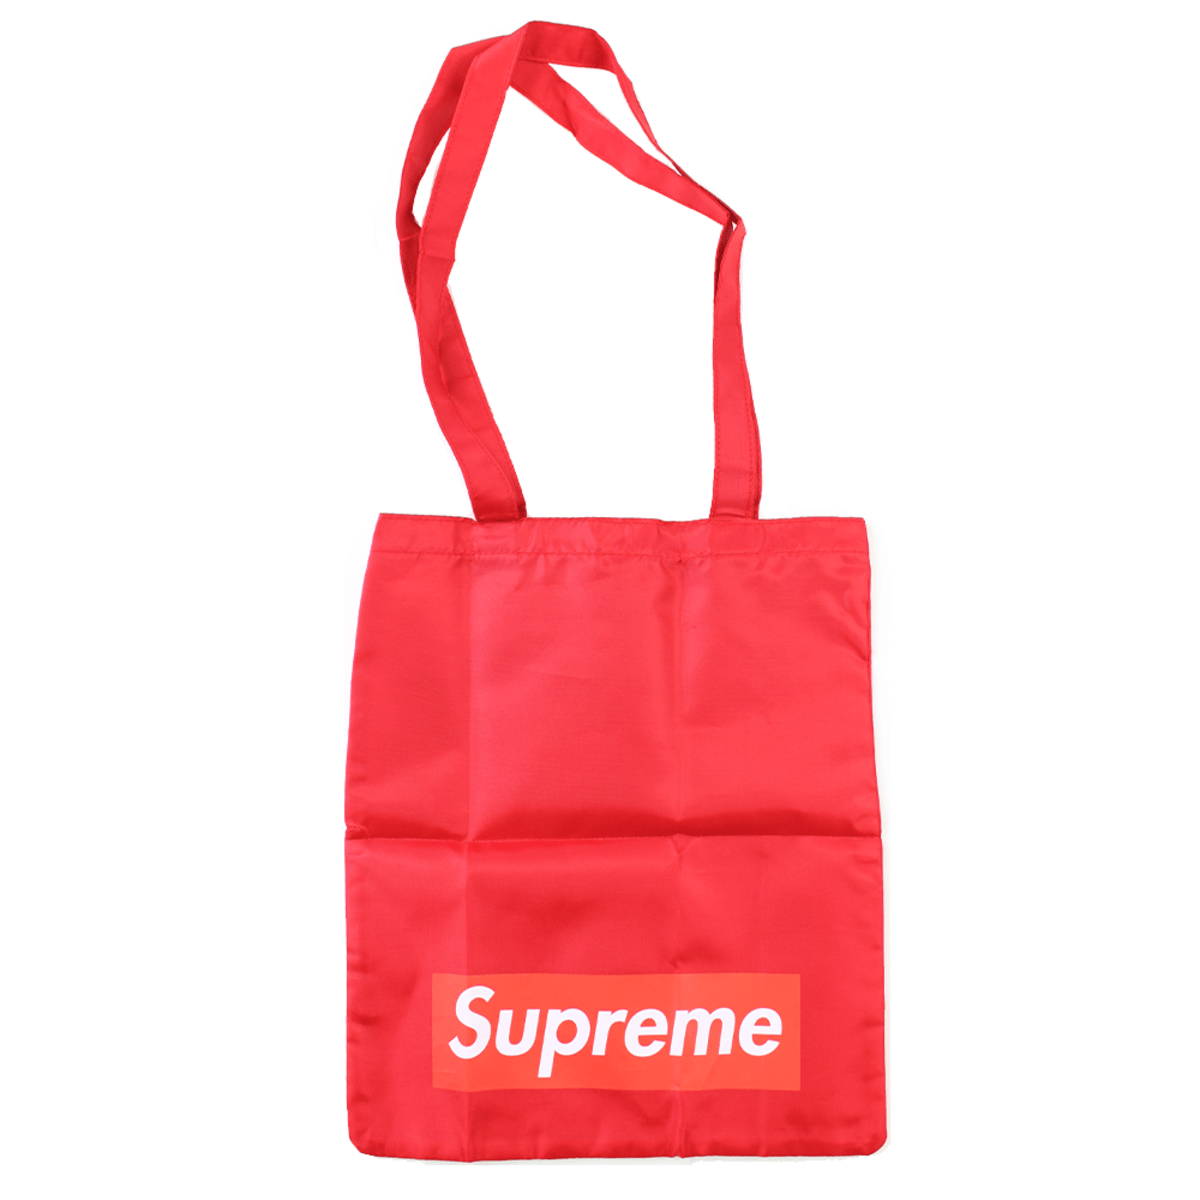 Supreme Tote Bag Red | SaruGeneral